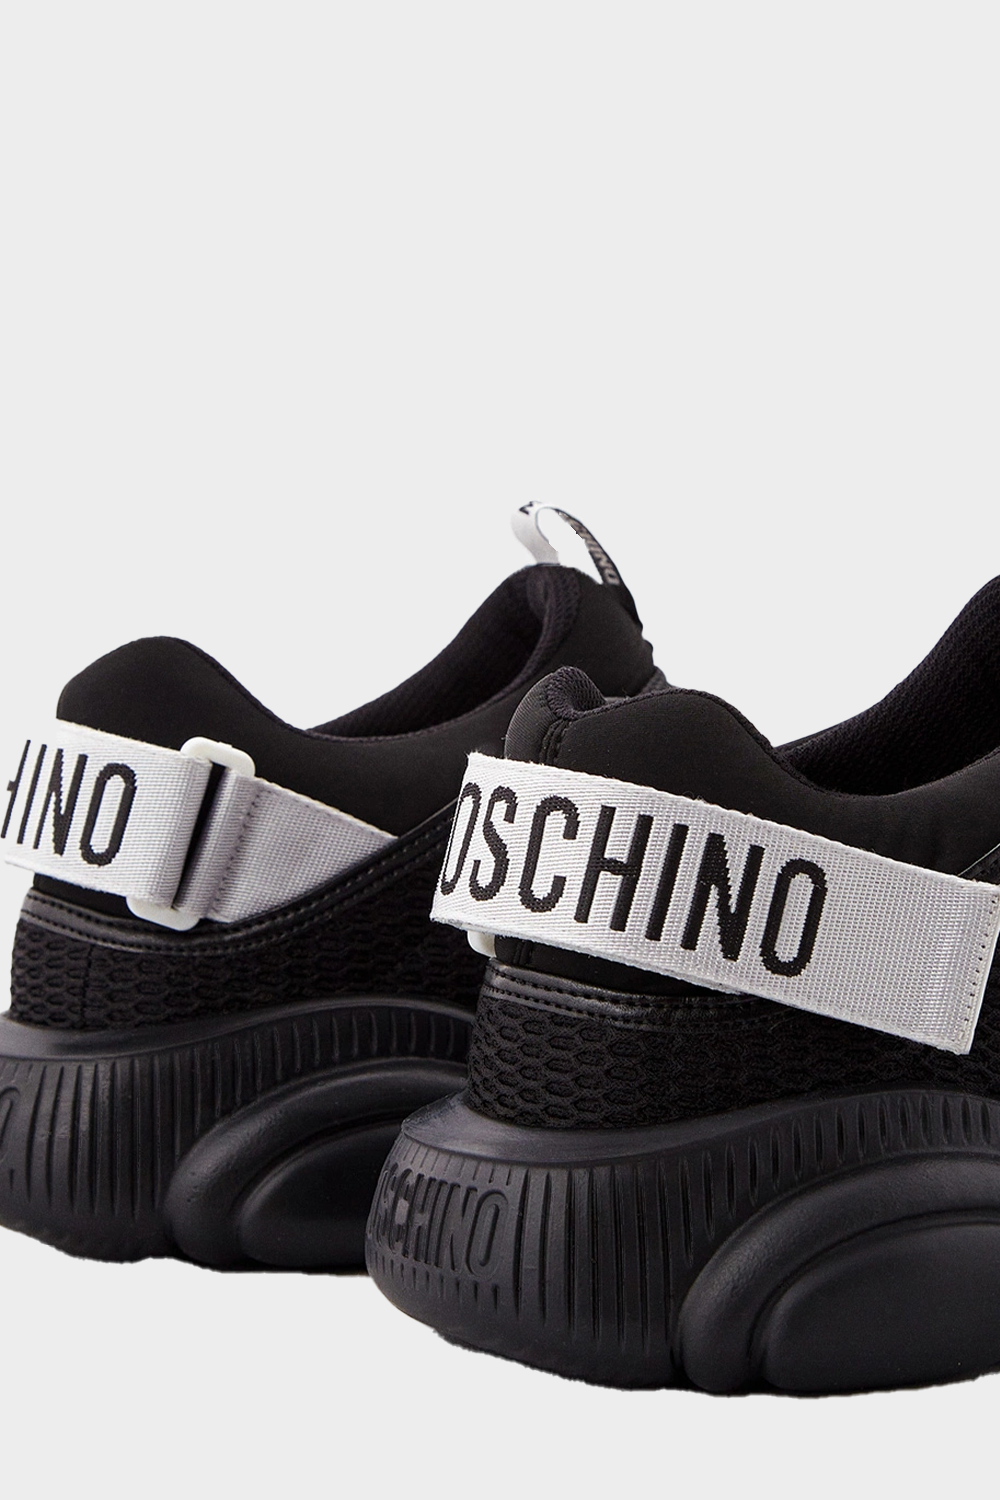 נעלי סניקרס מבד לגברים MOSCHINO בצבע שחור MOSCHINO Vendome online | ונדום .